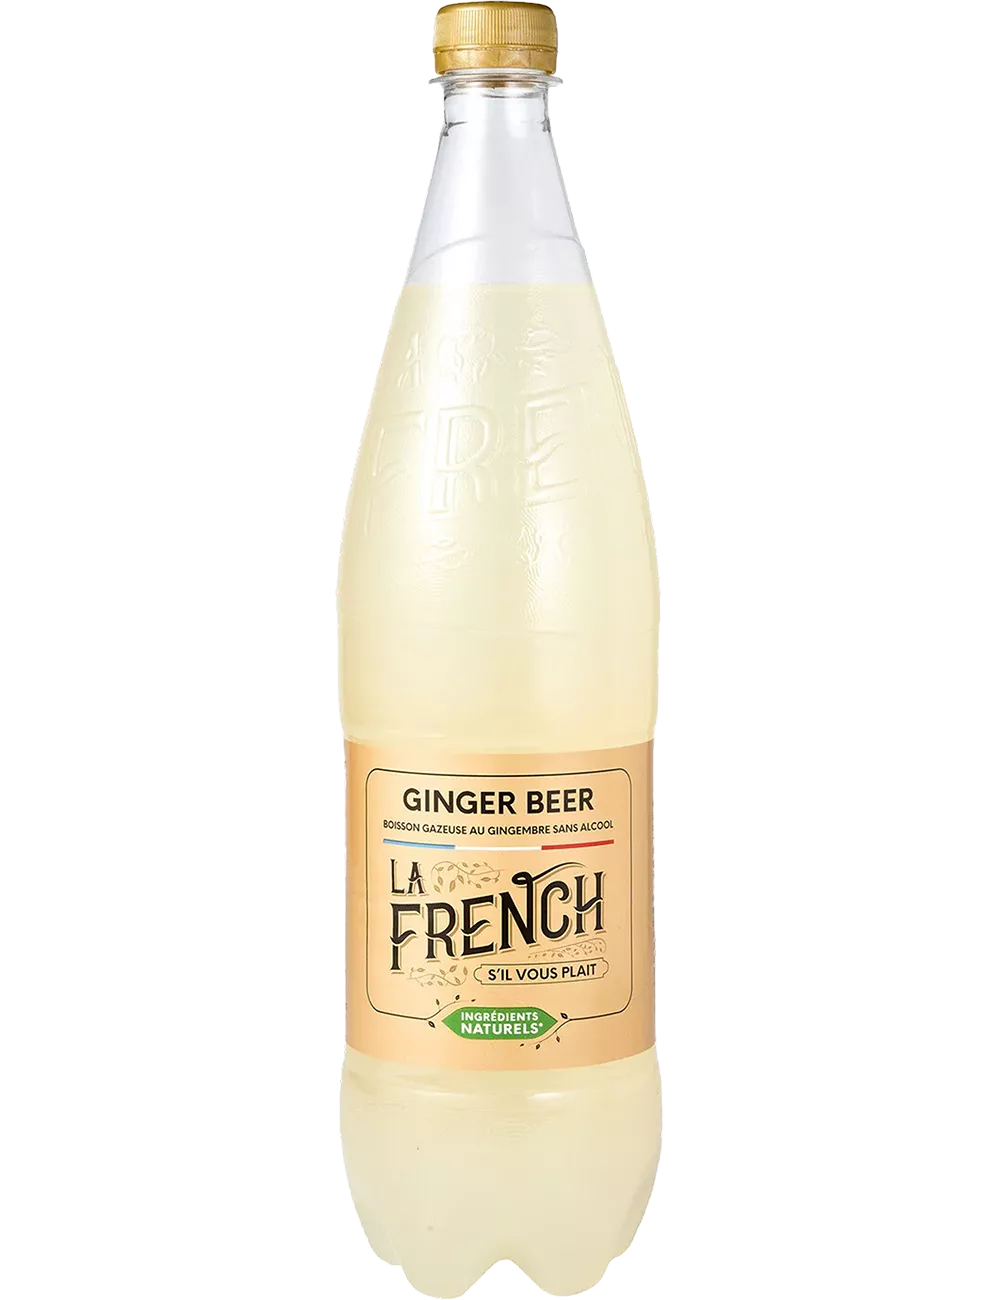 La French - Ginger Beer